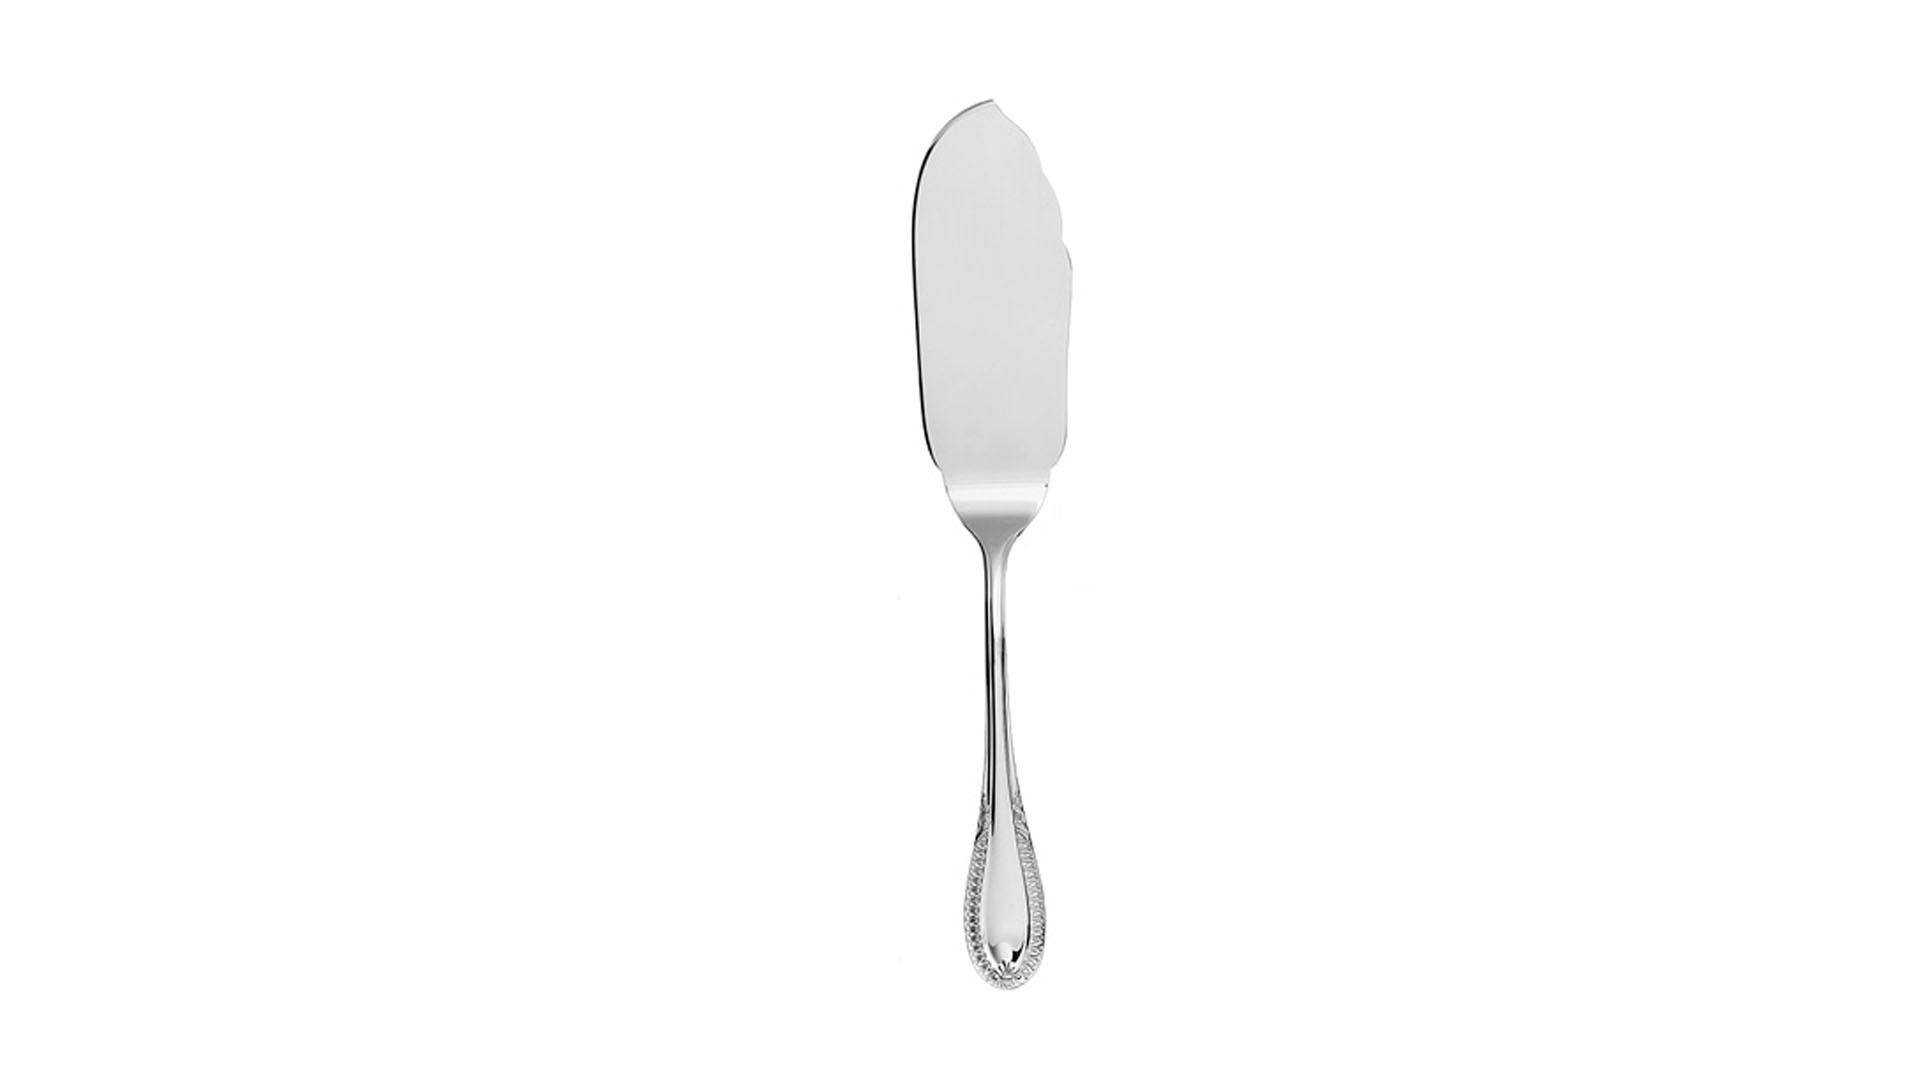 Нож для рыбы сервировочный 28 см Schiavon Имперо, серебро 925пр